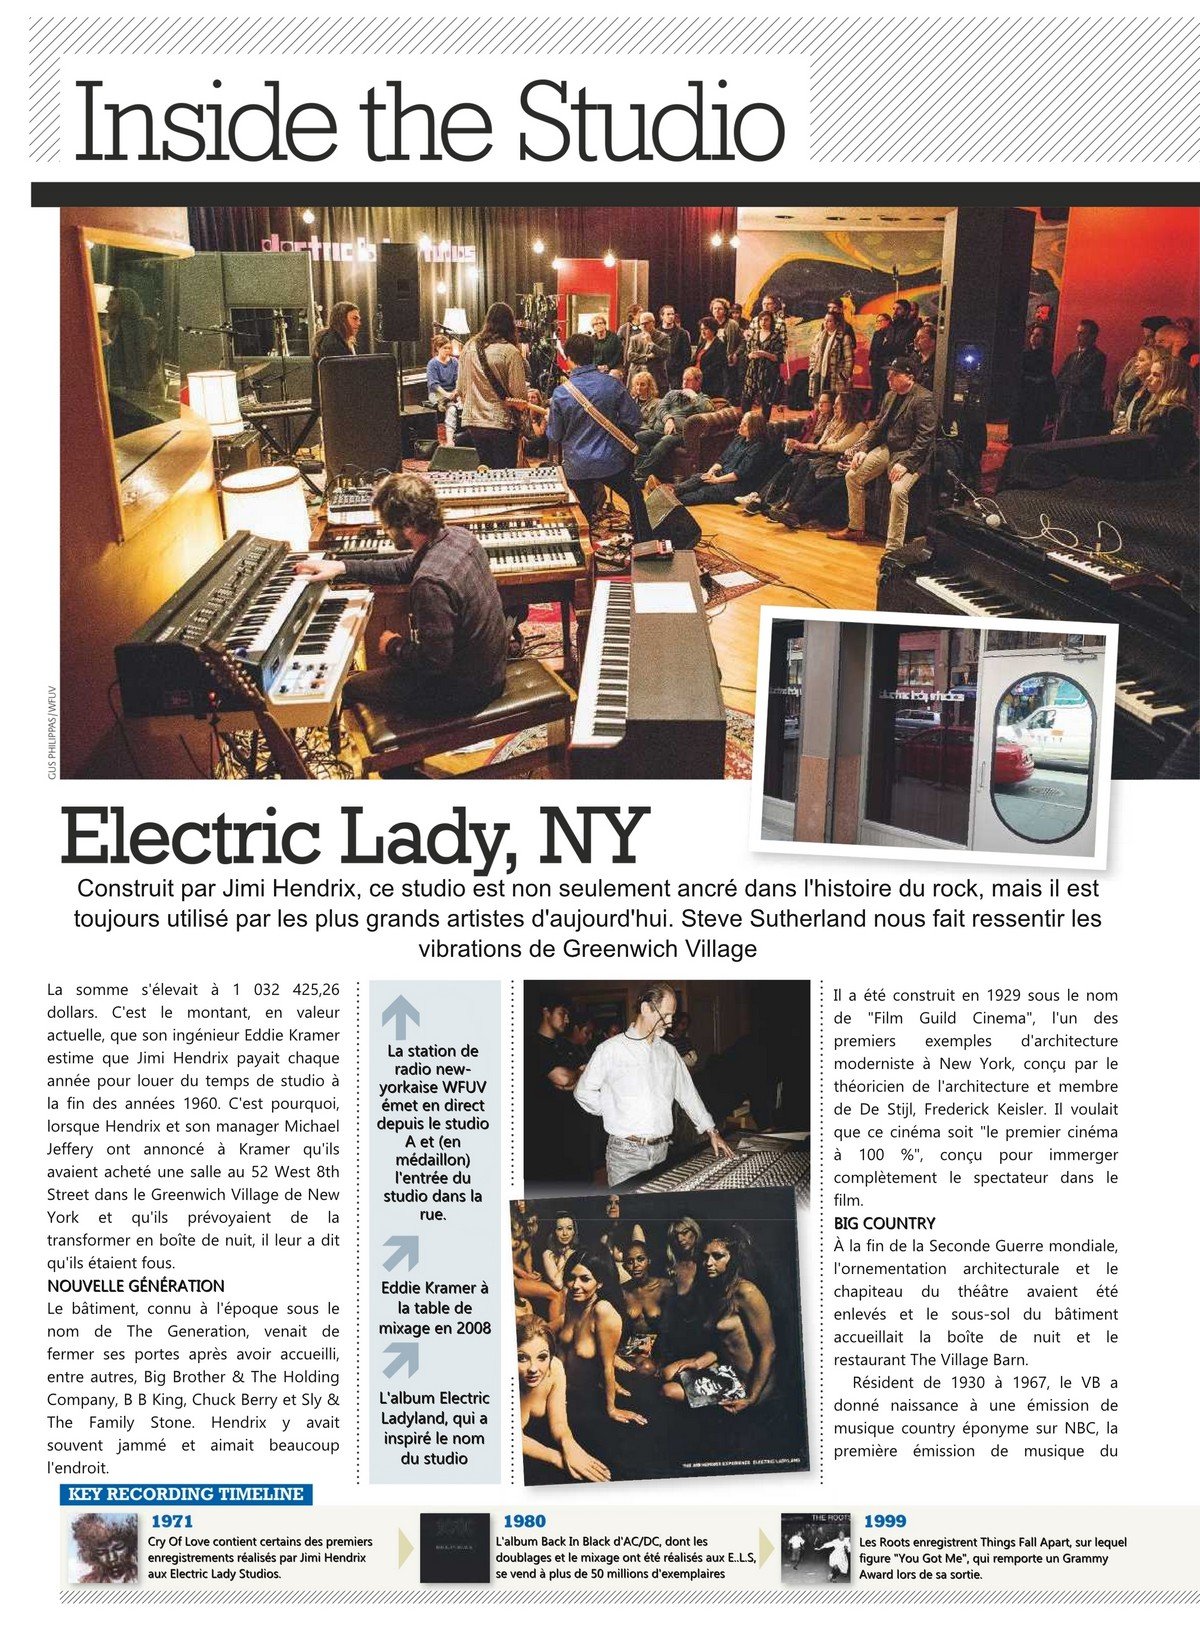 Electric Lady NY-1.jpeg